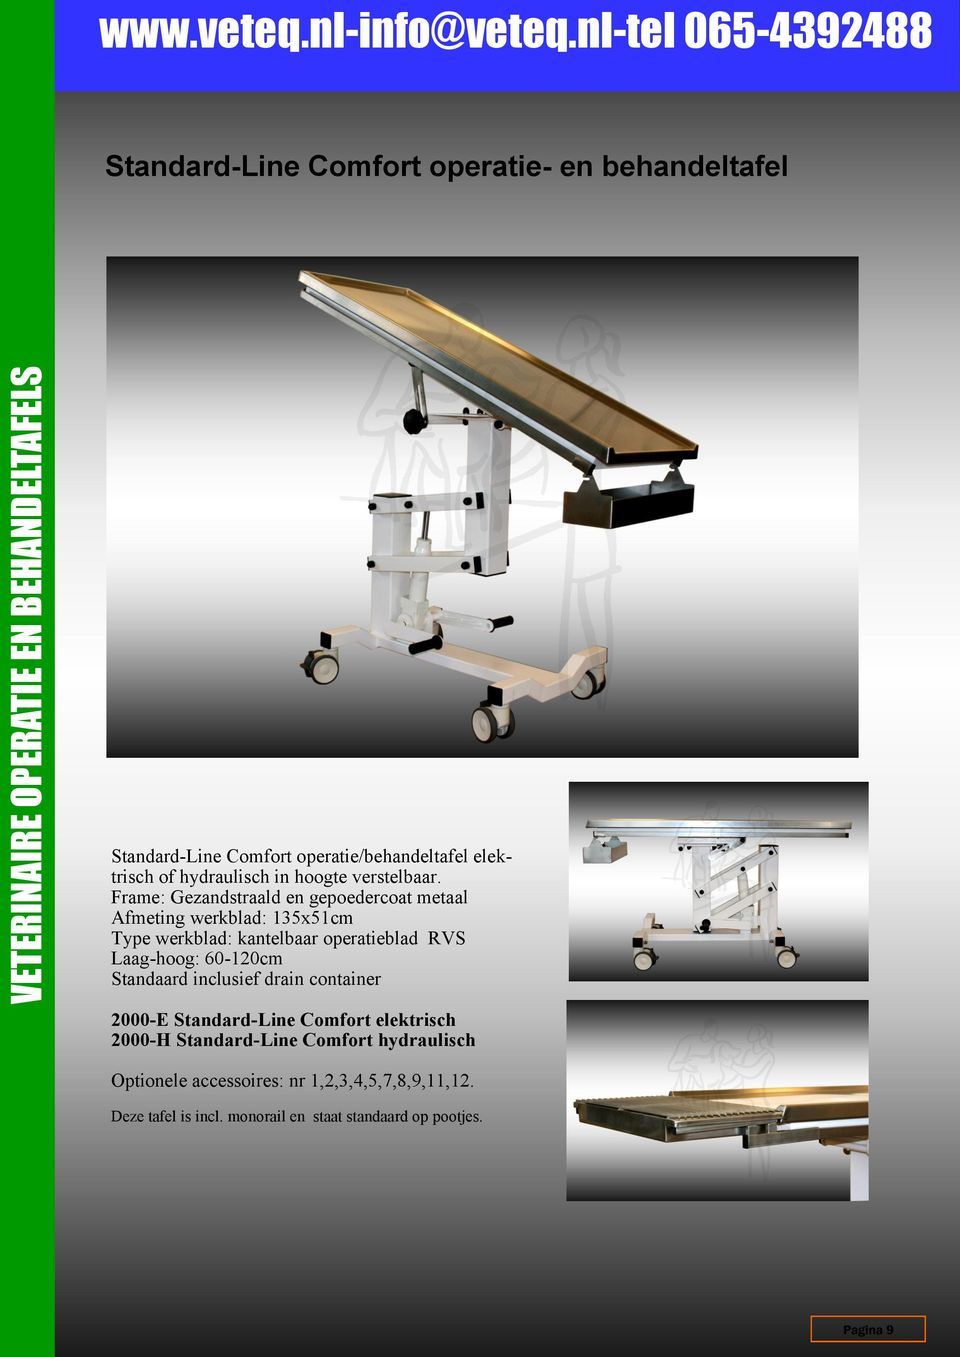 Frame: Gezandstraald en gepoedercoat metaal Afmeting werkblad: 135x51cm Type werkblad: kantelbaar operatieblad RVS Laag-hoog: 60-120cm